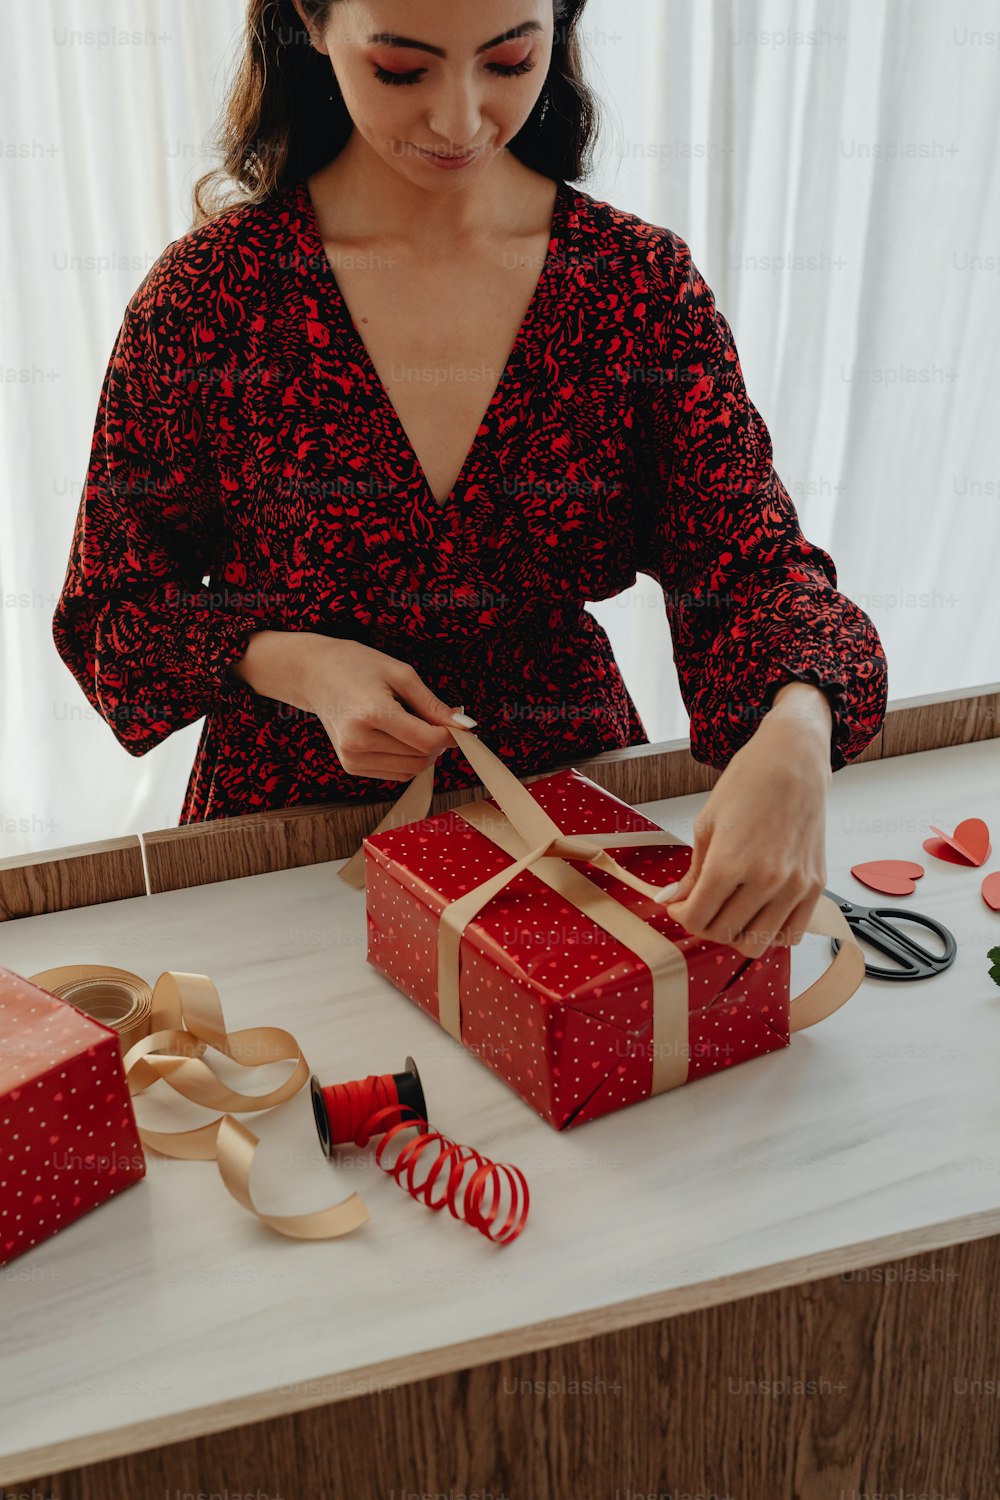 Una mujer con un vestido rojo abriendo una caja de regalo